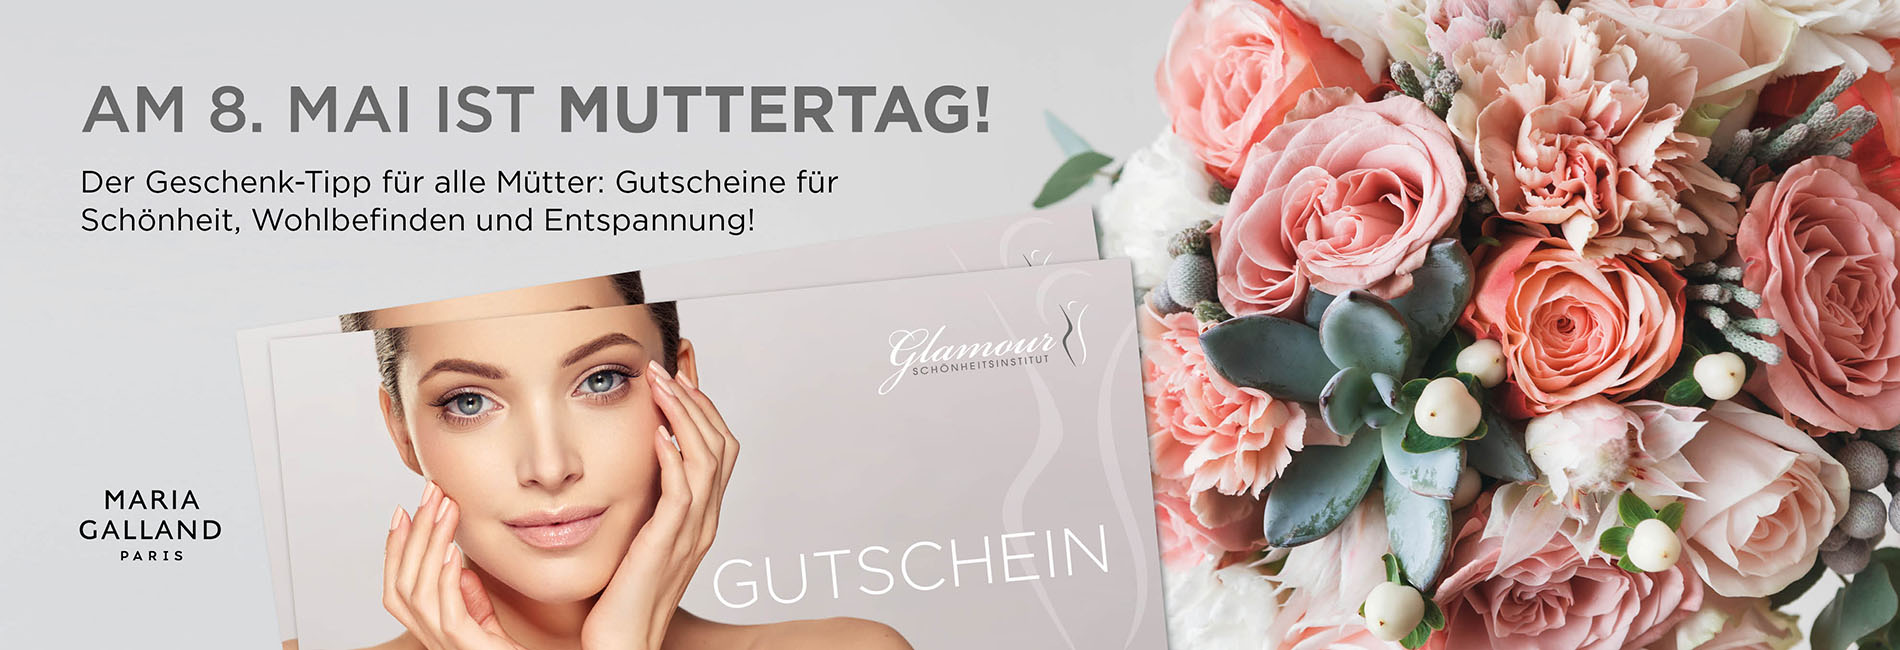 Glamour Schönheitsinstitut Webbanner Gutscheine Muttertag 900×650 2022